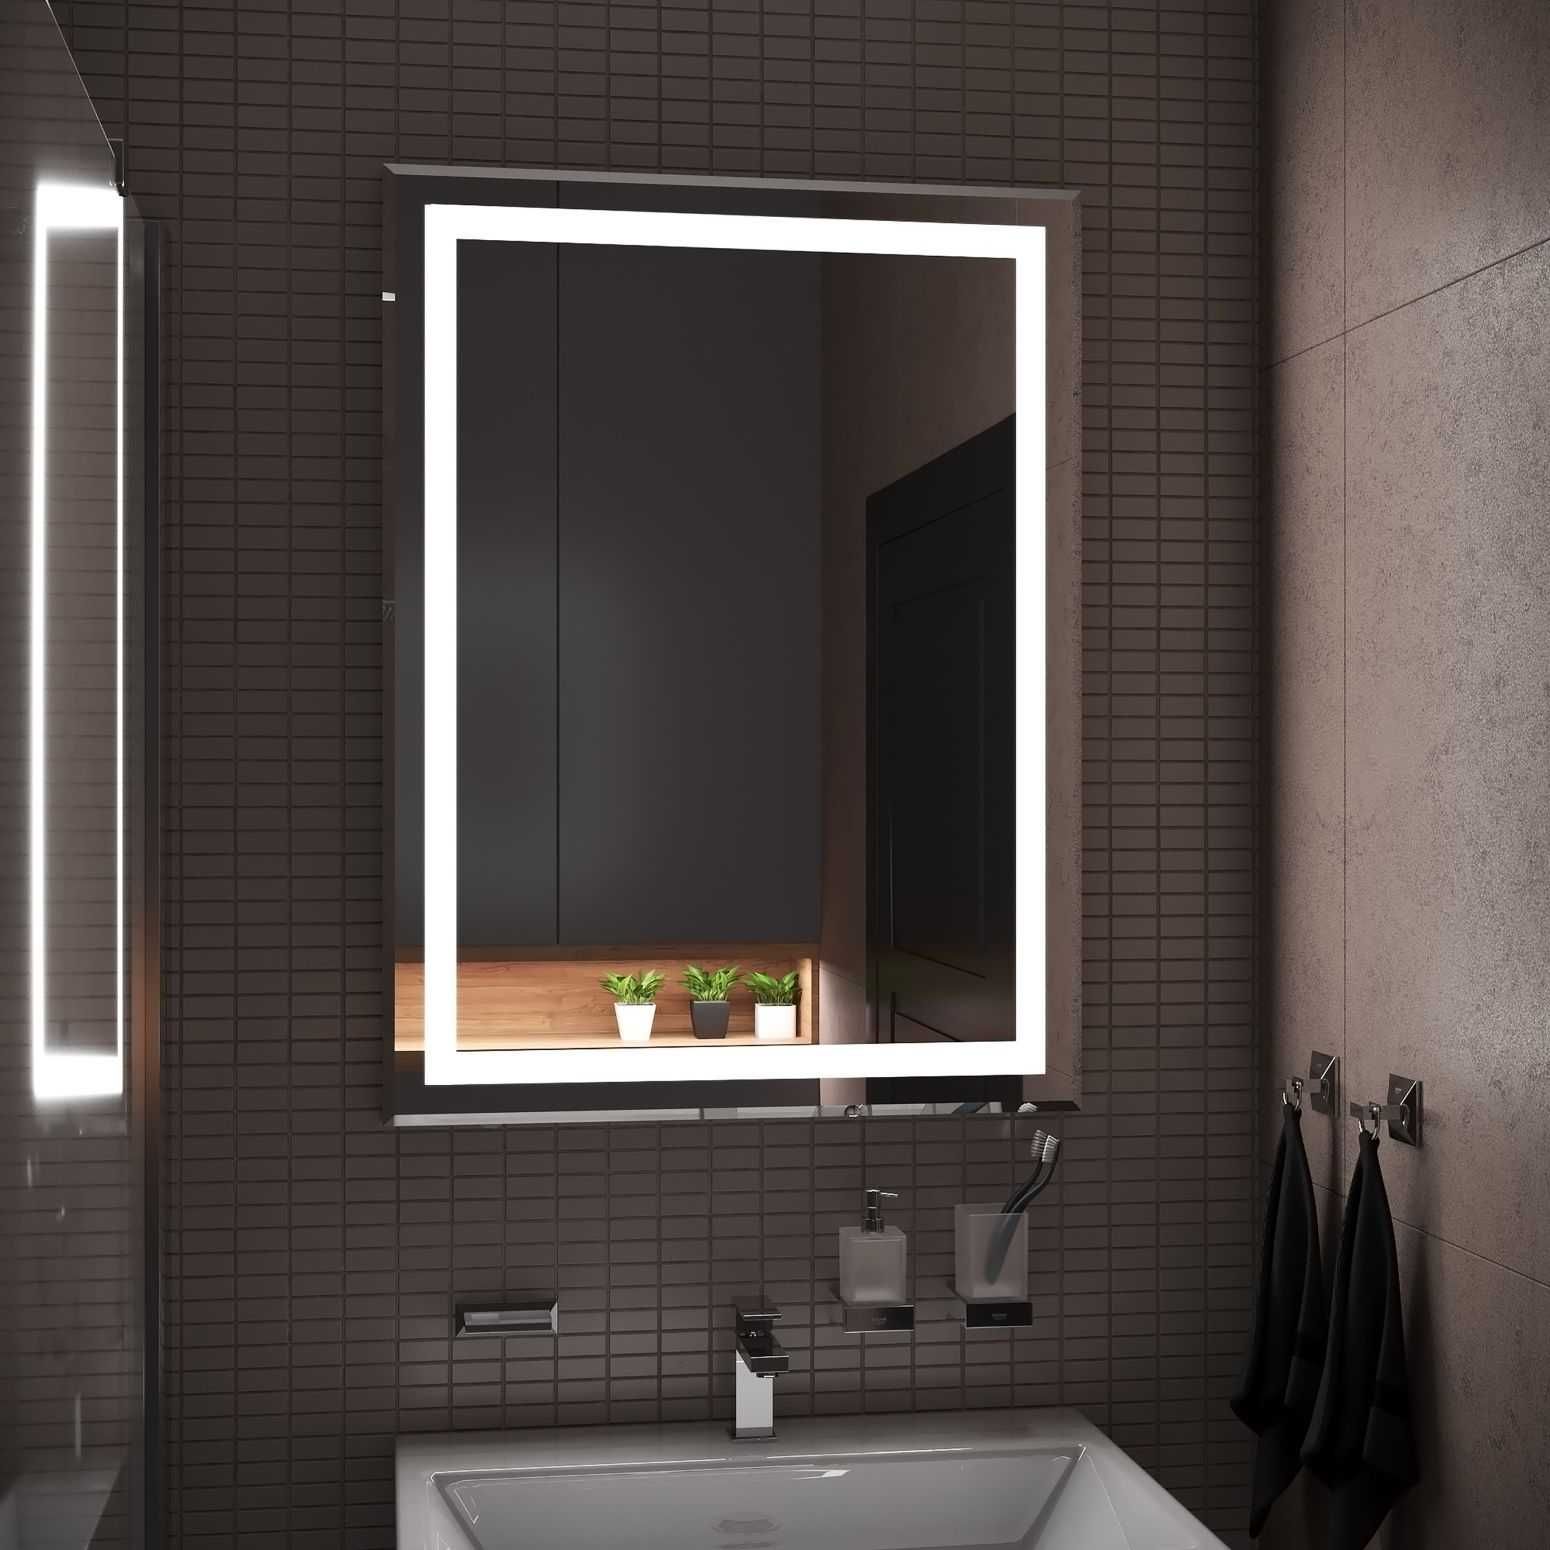 лед зеркало ванной комнаты, зеркало для санузла, зеркало с подсветкой,